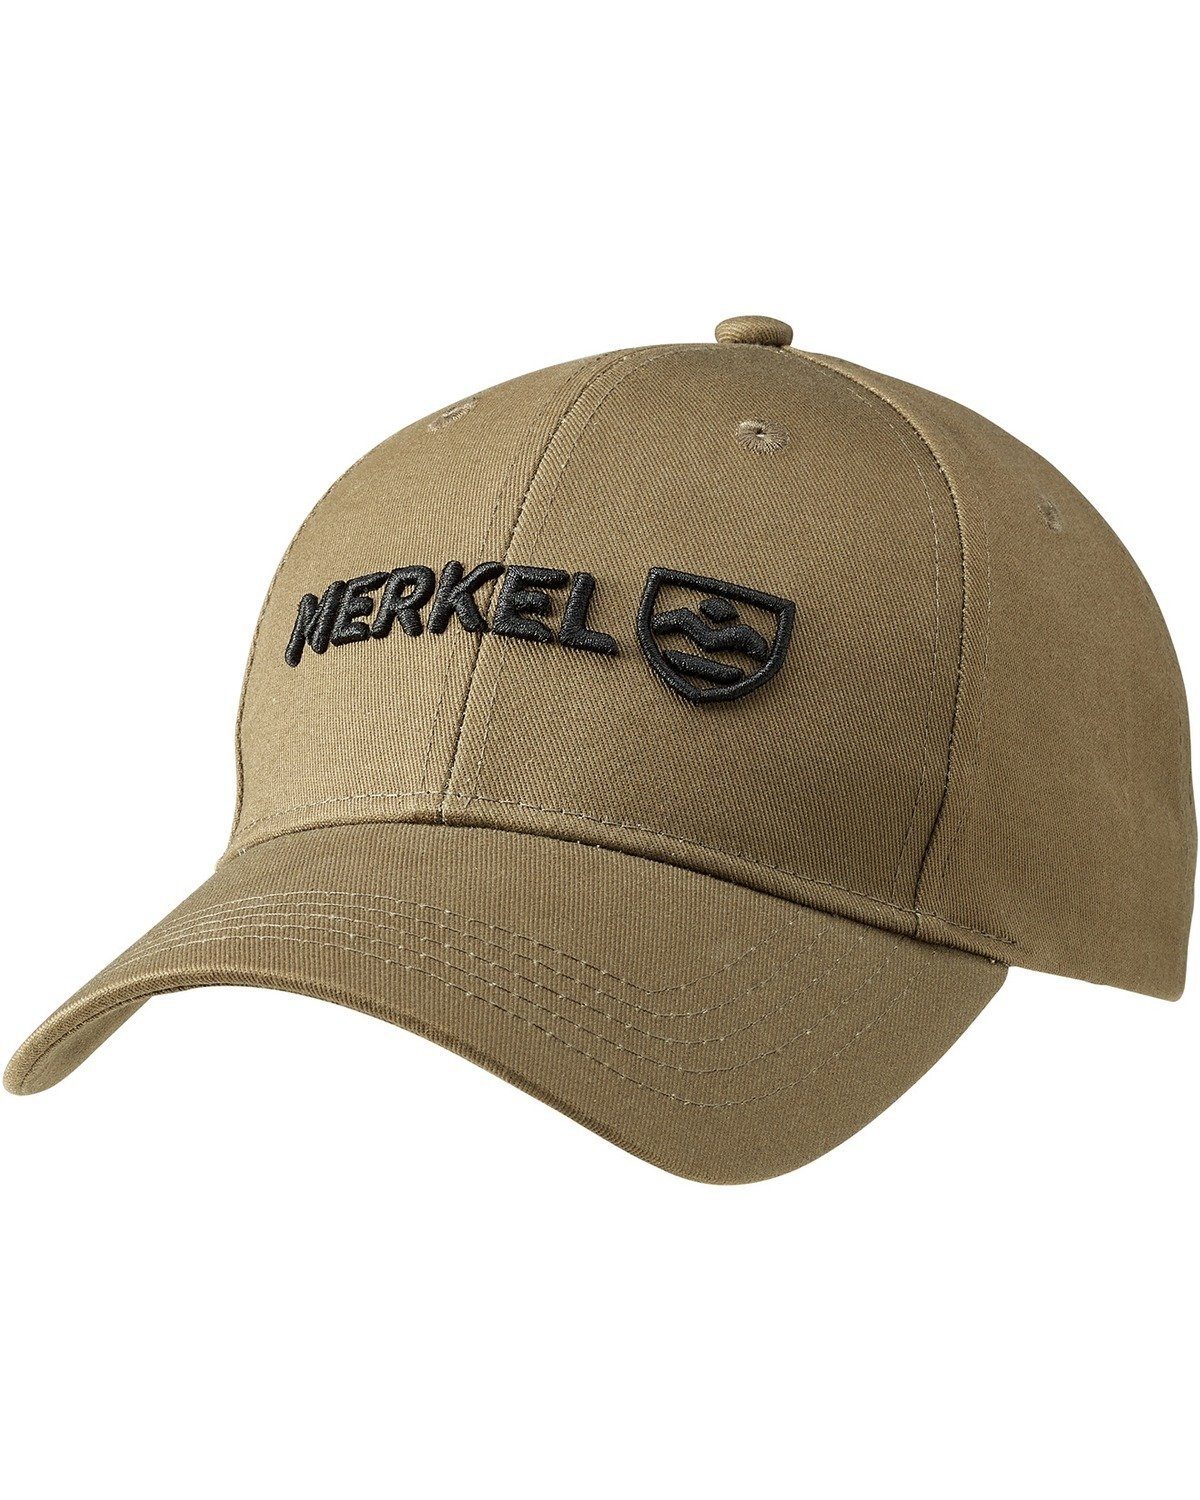 Solid Cap Cap Gear Baseball Merkel